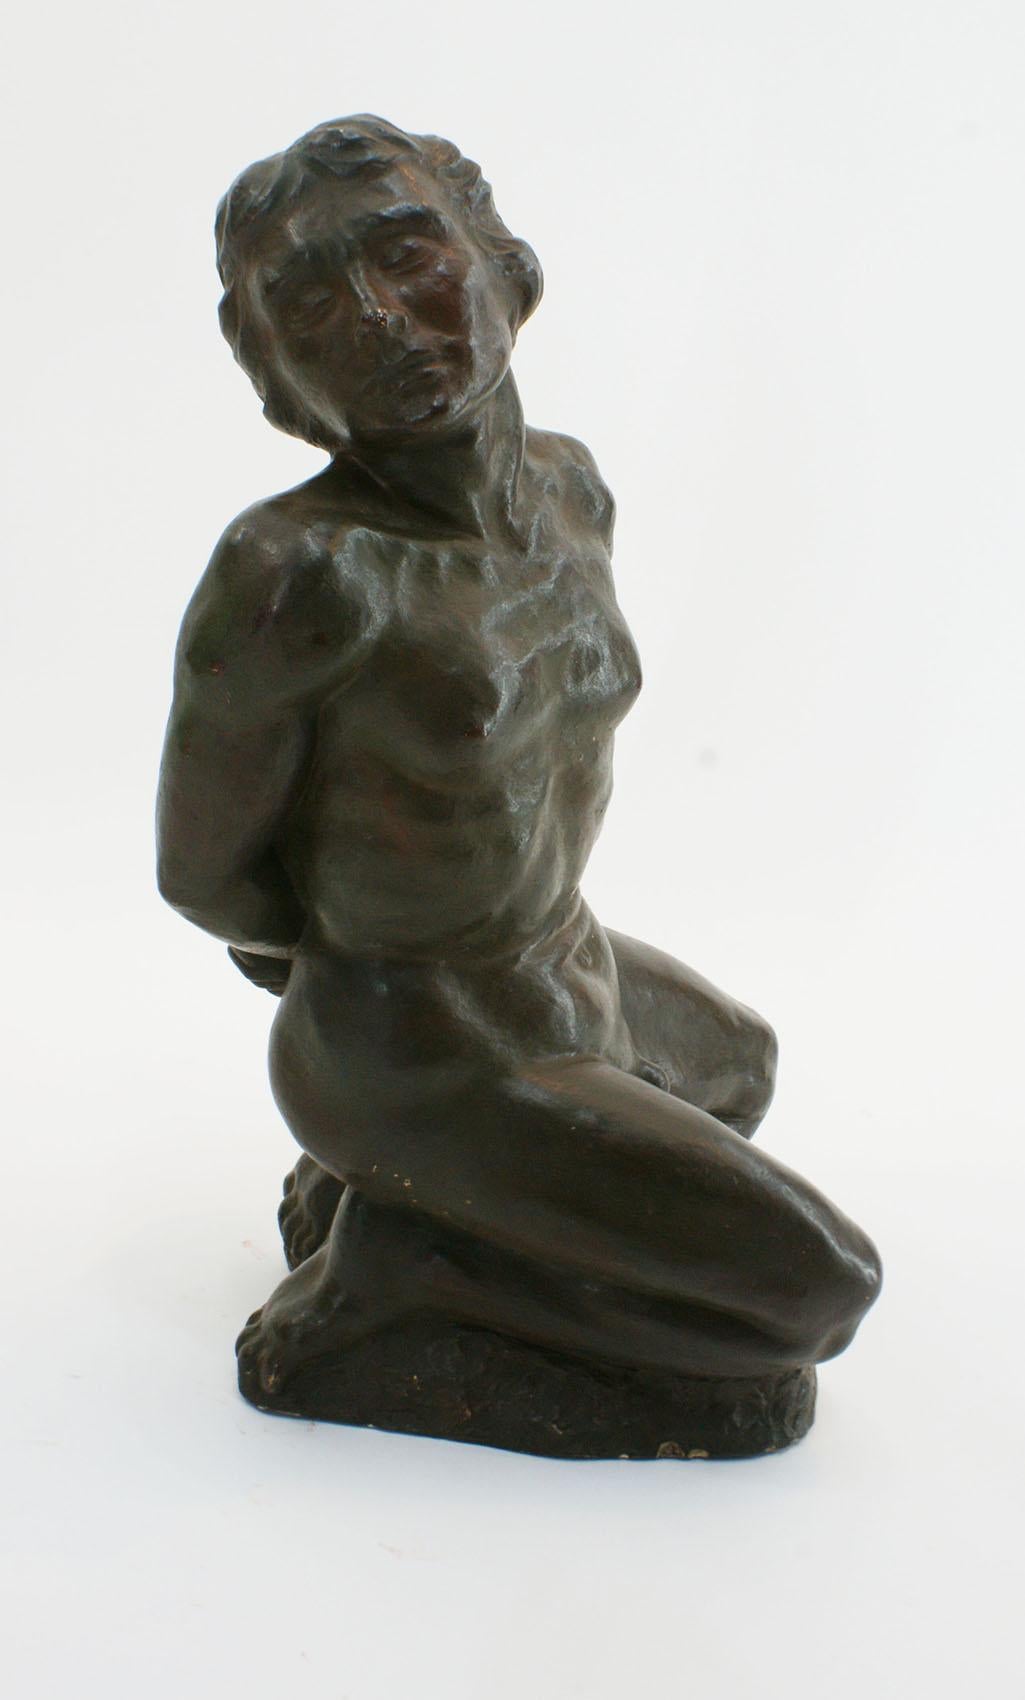 Französische Terrakotta-Skulptur des Art Déco in schwarzer Patina von R. Brageu, die einen nackten, athletischen jungen Mann auf den Knien in einer Haltung der Unterwerfung darstellt. Dieses Werk konzentriert sich auf die menschliche Anatomie und